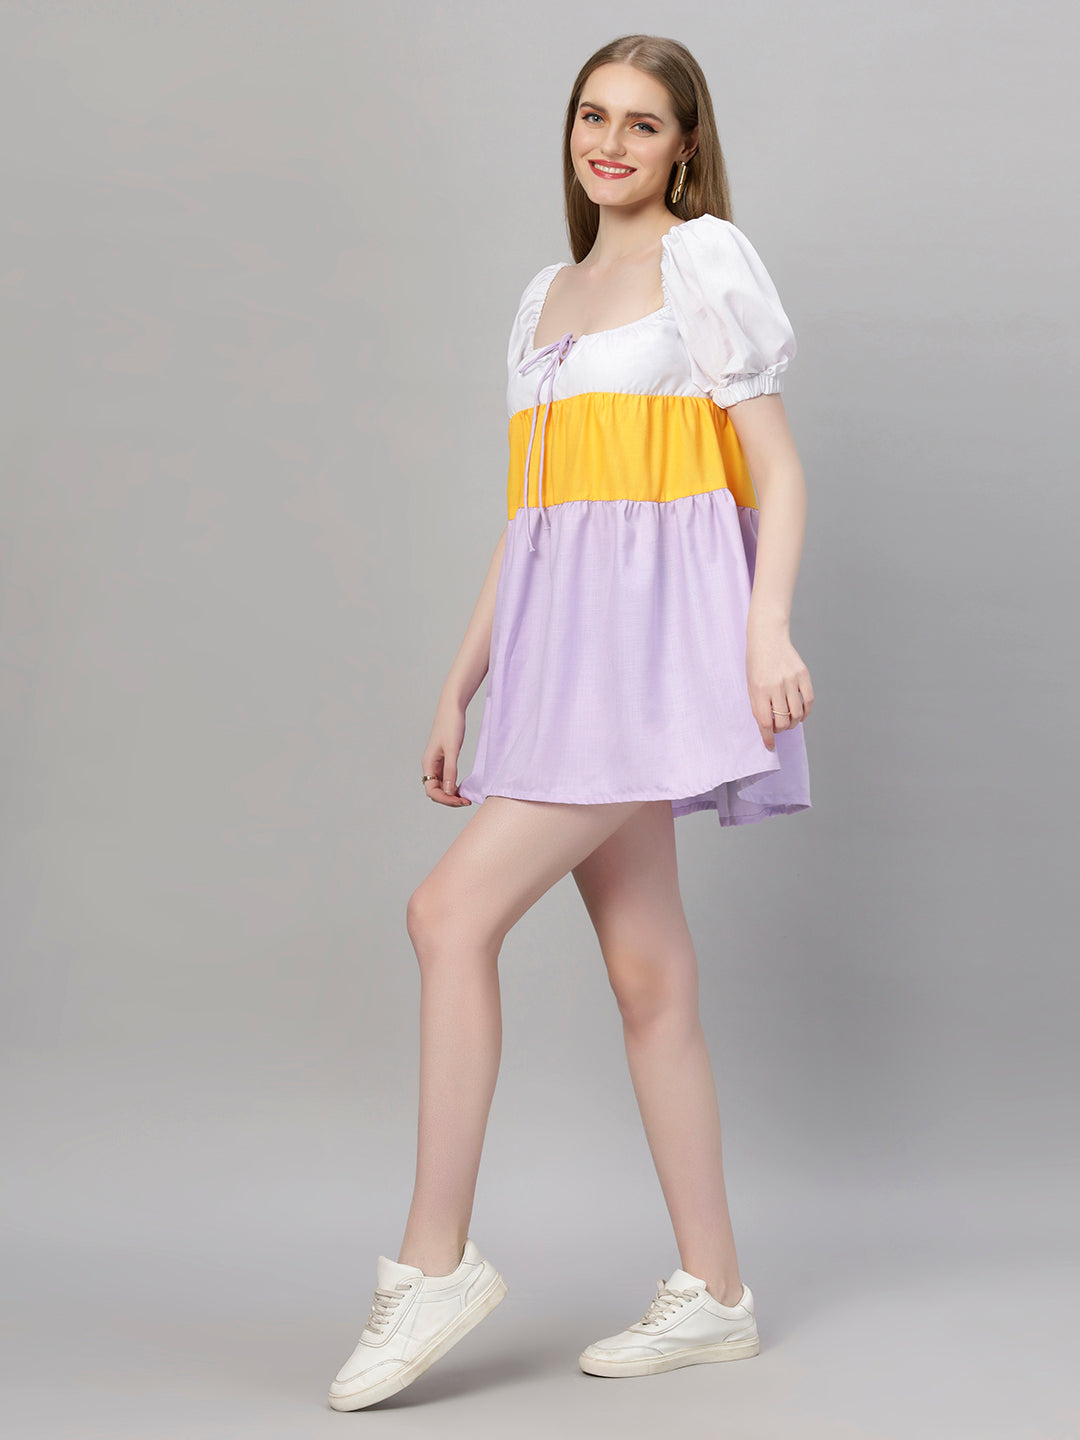 Colourblock Cute Summer Dress